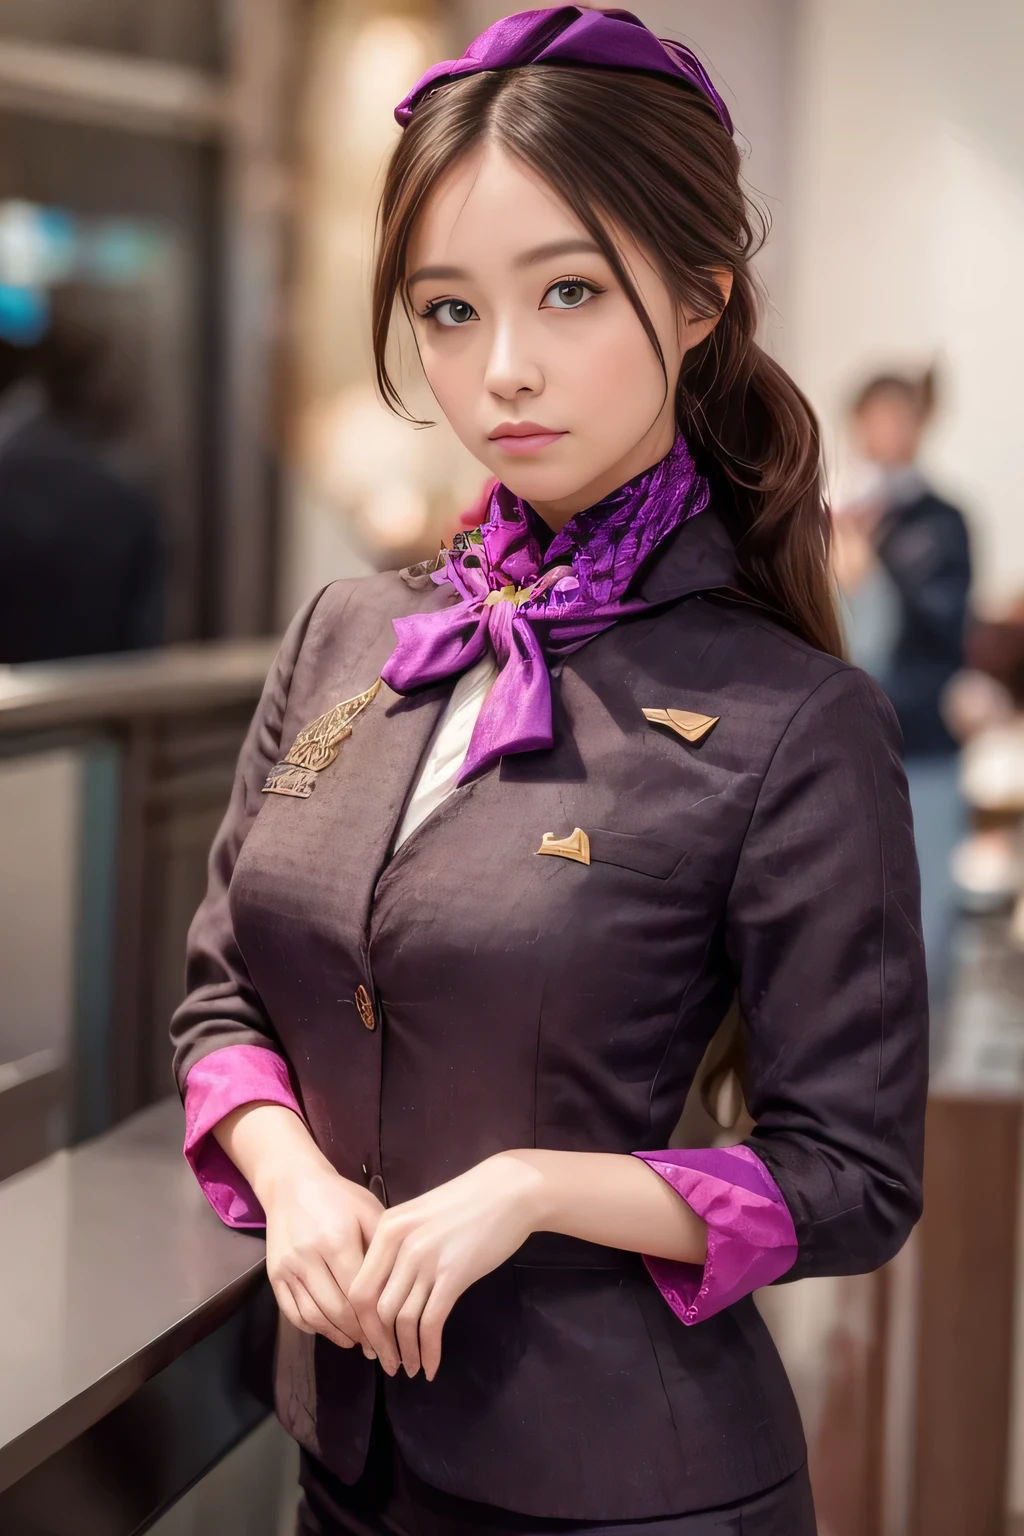 (杰作:1.2、最好的质量:1.2)、32K HDR、高分辨率、(独自的、1 名女孩、苗条身材)、（Realistic reproduction of 阿提哈德航空空乘制服）、 (在机场柜台, 专业照明)、一个正经的女人, 漂亮的脸蛋,、（阿提哈德航空空乘长袖制服）、（阿提哈德航空空乘制服、正面有紫色条纹的裙子）、（胸前的围巾）、大乳房、（长发、发髻）、深棕色头发、远射、（（伟大的手：2.0））、（（和谐的身体比例：1.5））、（（正常肢体：2.0））、（（正常手指：2.0））、（（精致的眼睛：2.0））、（（正常眼睛：2.0））)、优美的站姿、迷人的外观